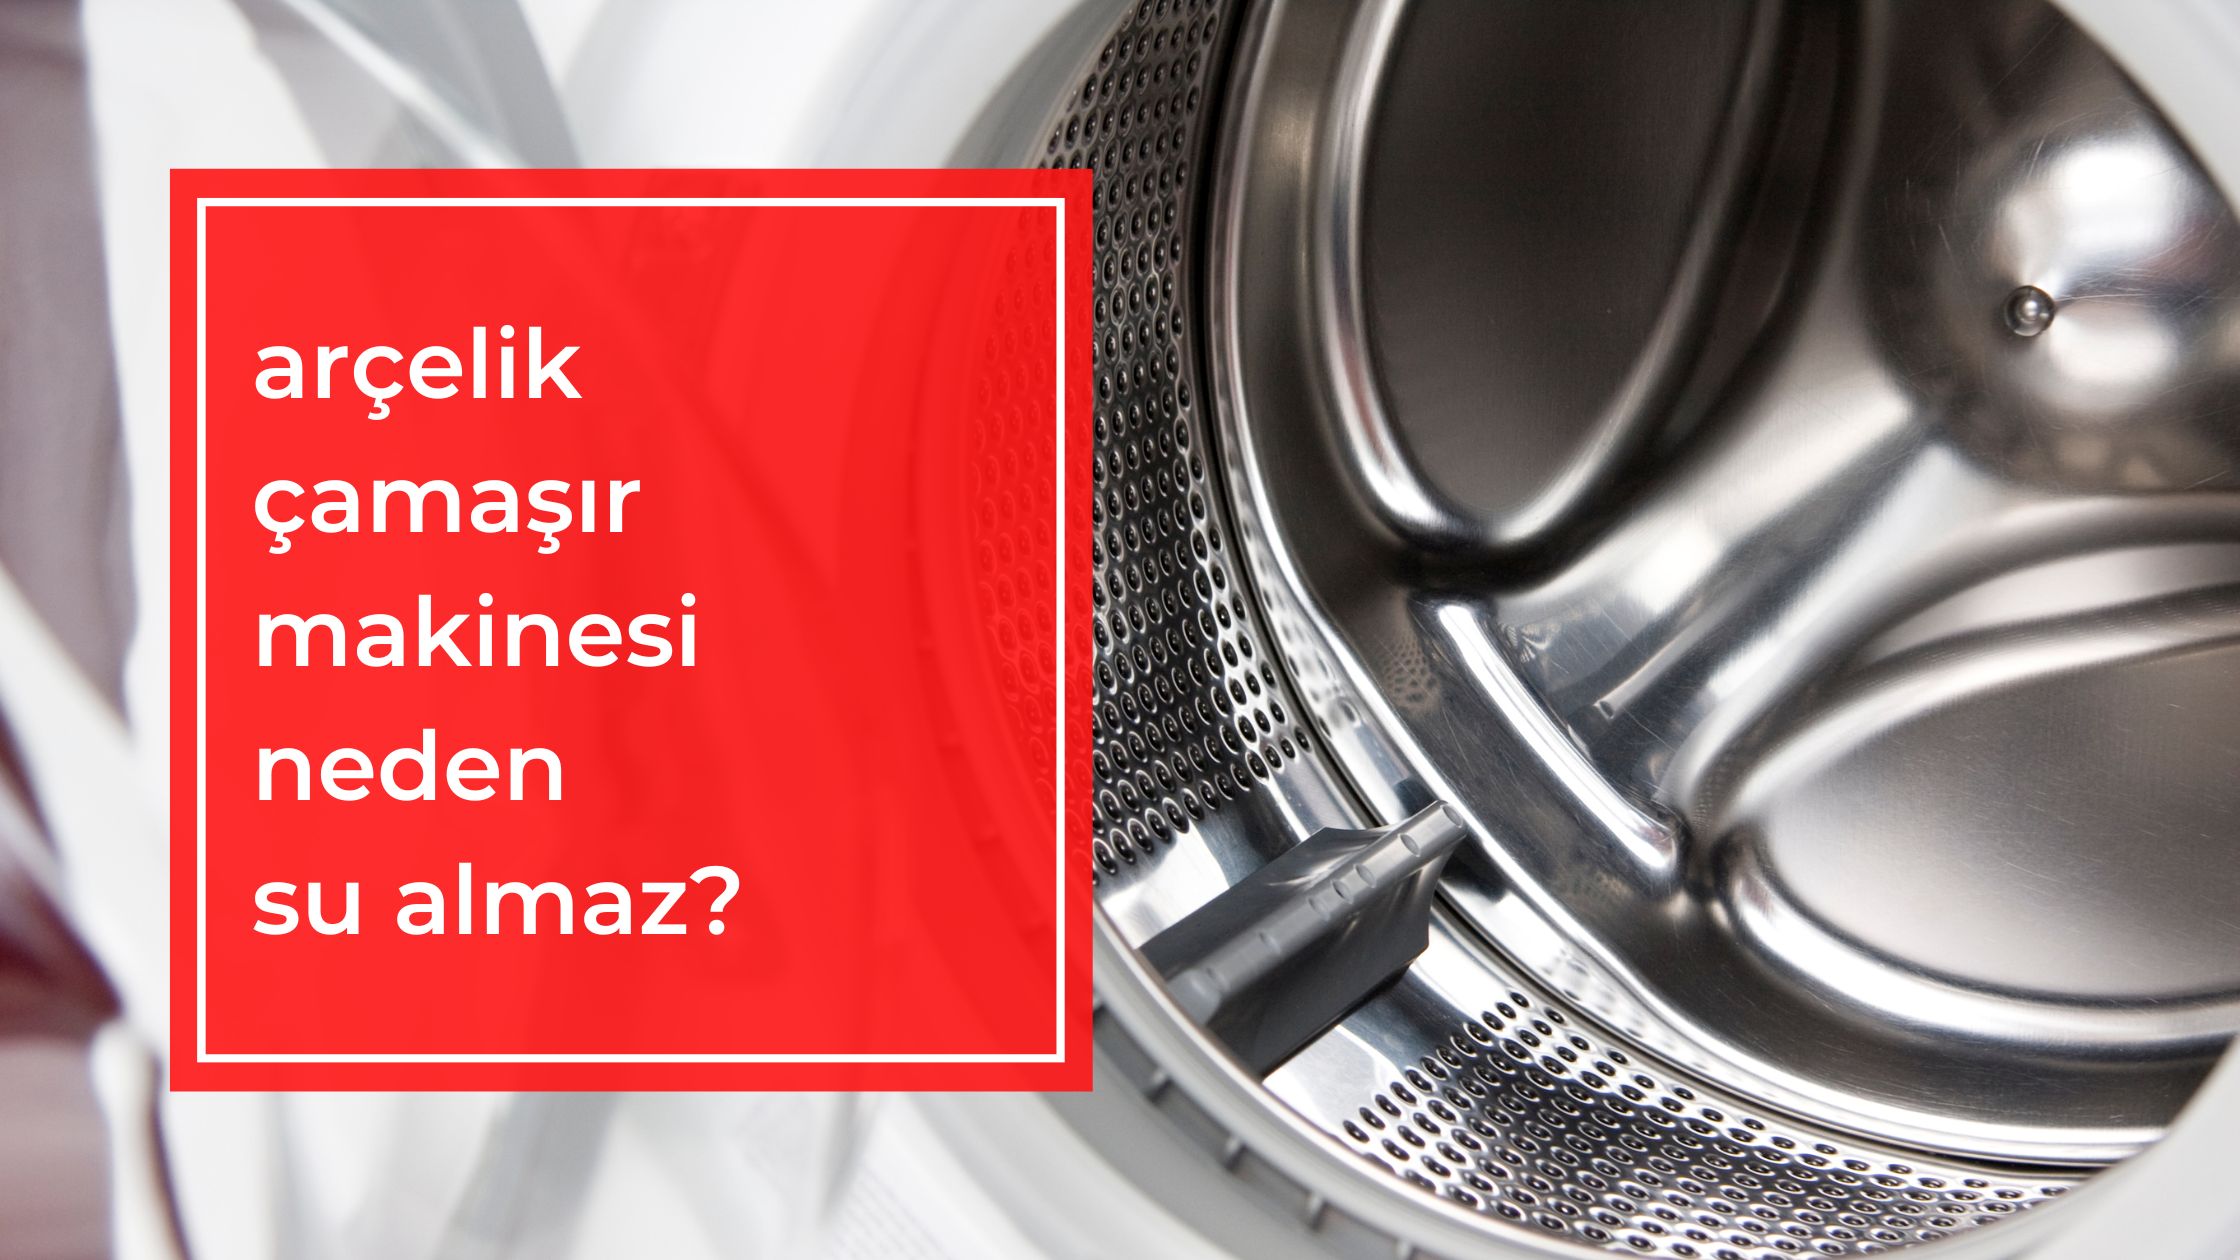 Arçelik Çamaşır Makinesi Neden Su Almaz?